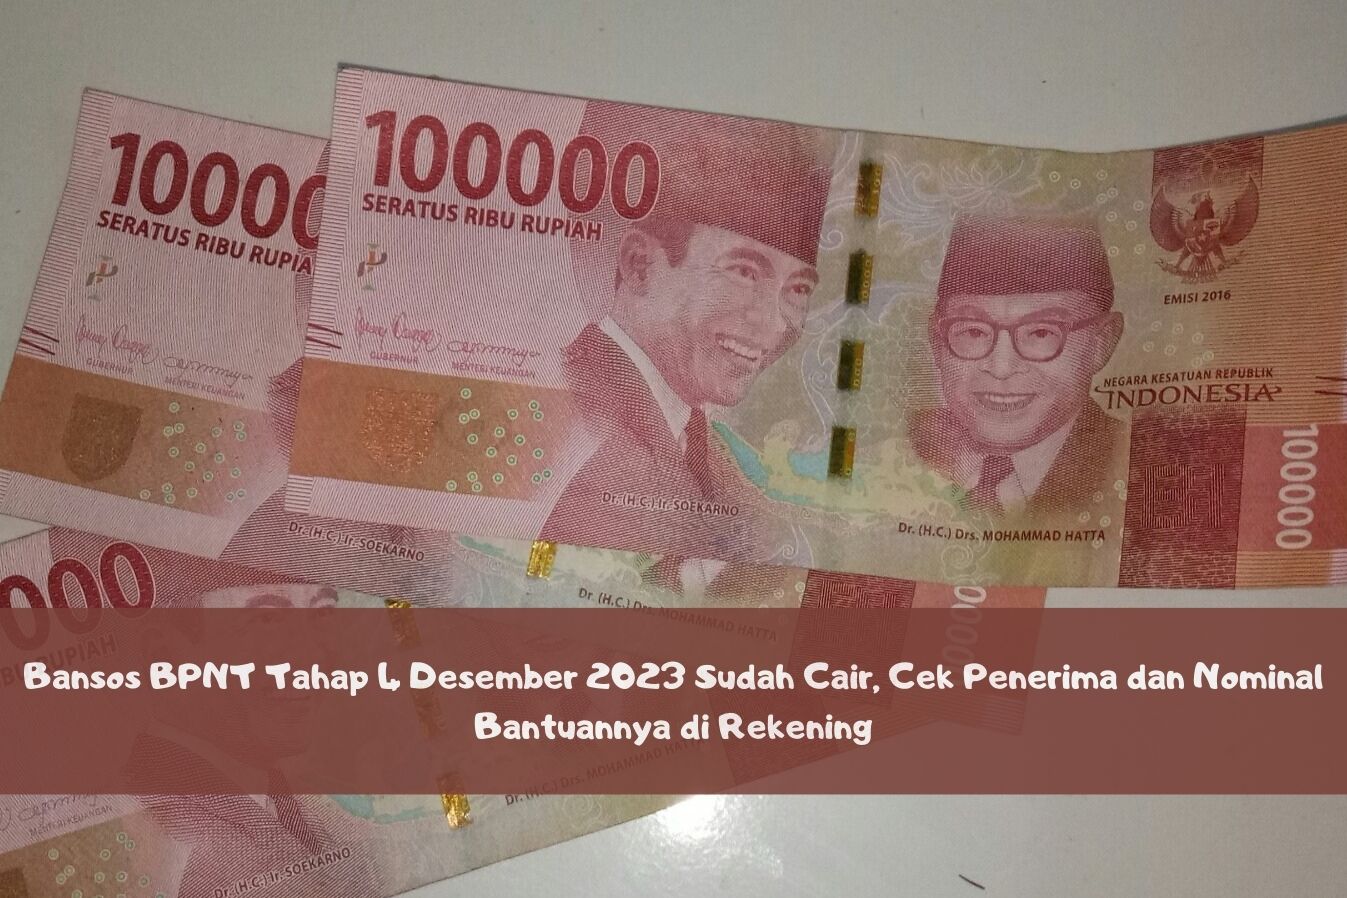 Bansos BPNT Tahap 4 Desember 2023 Sudah Cair, Cek Penerima dan Nominal Bantuannya di Rekening